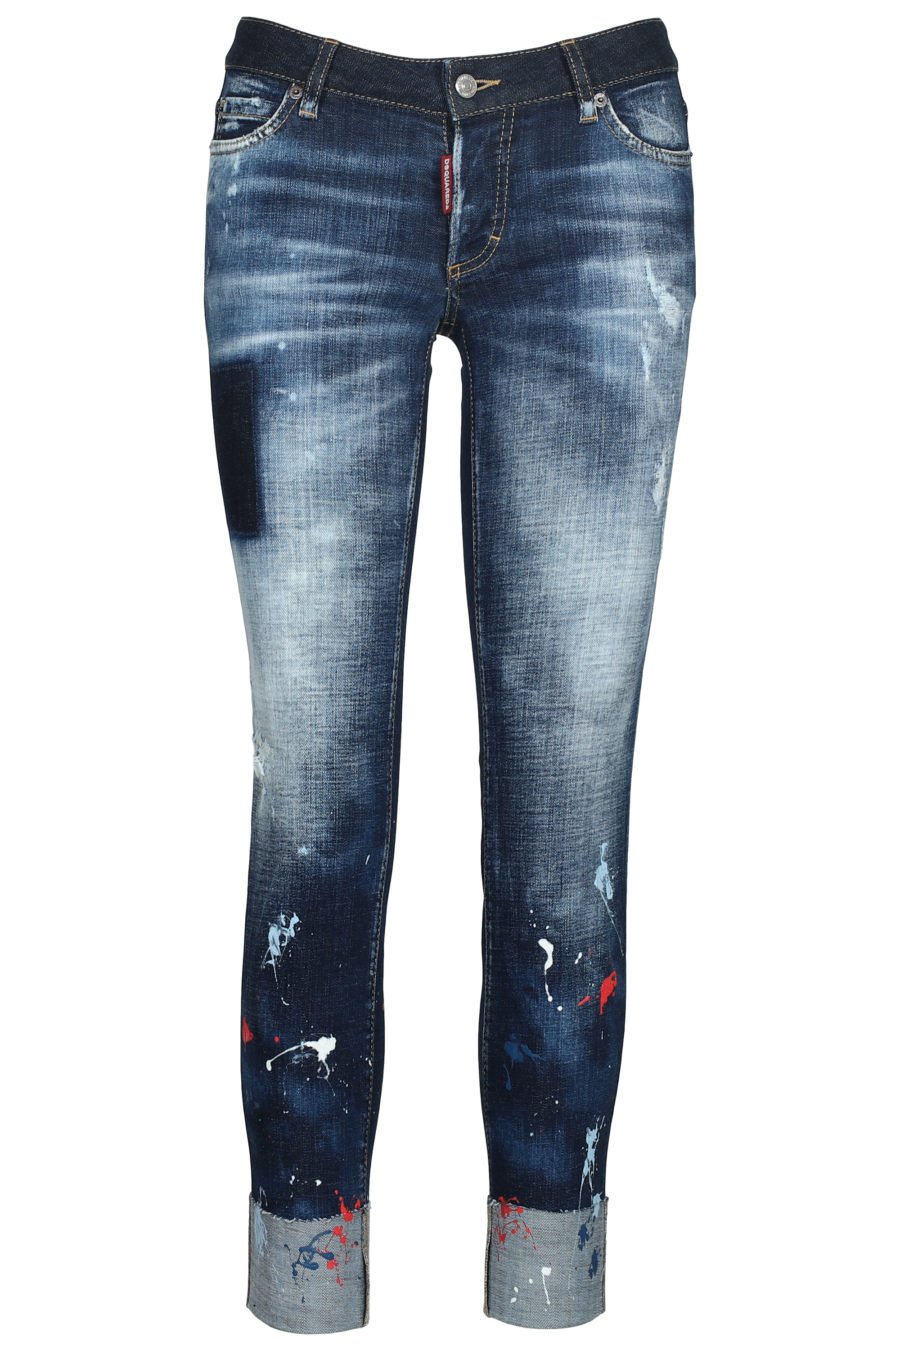 Jeans avec taches de peinture "Jennifer cropped" - IMG 5612